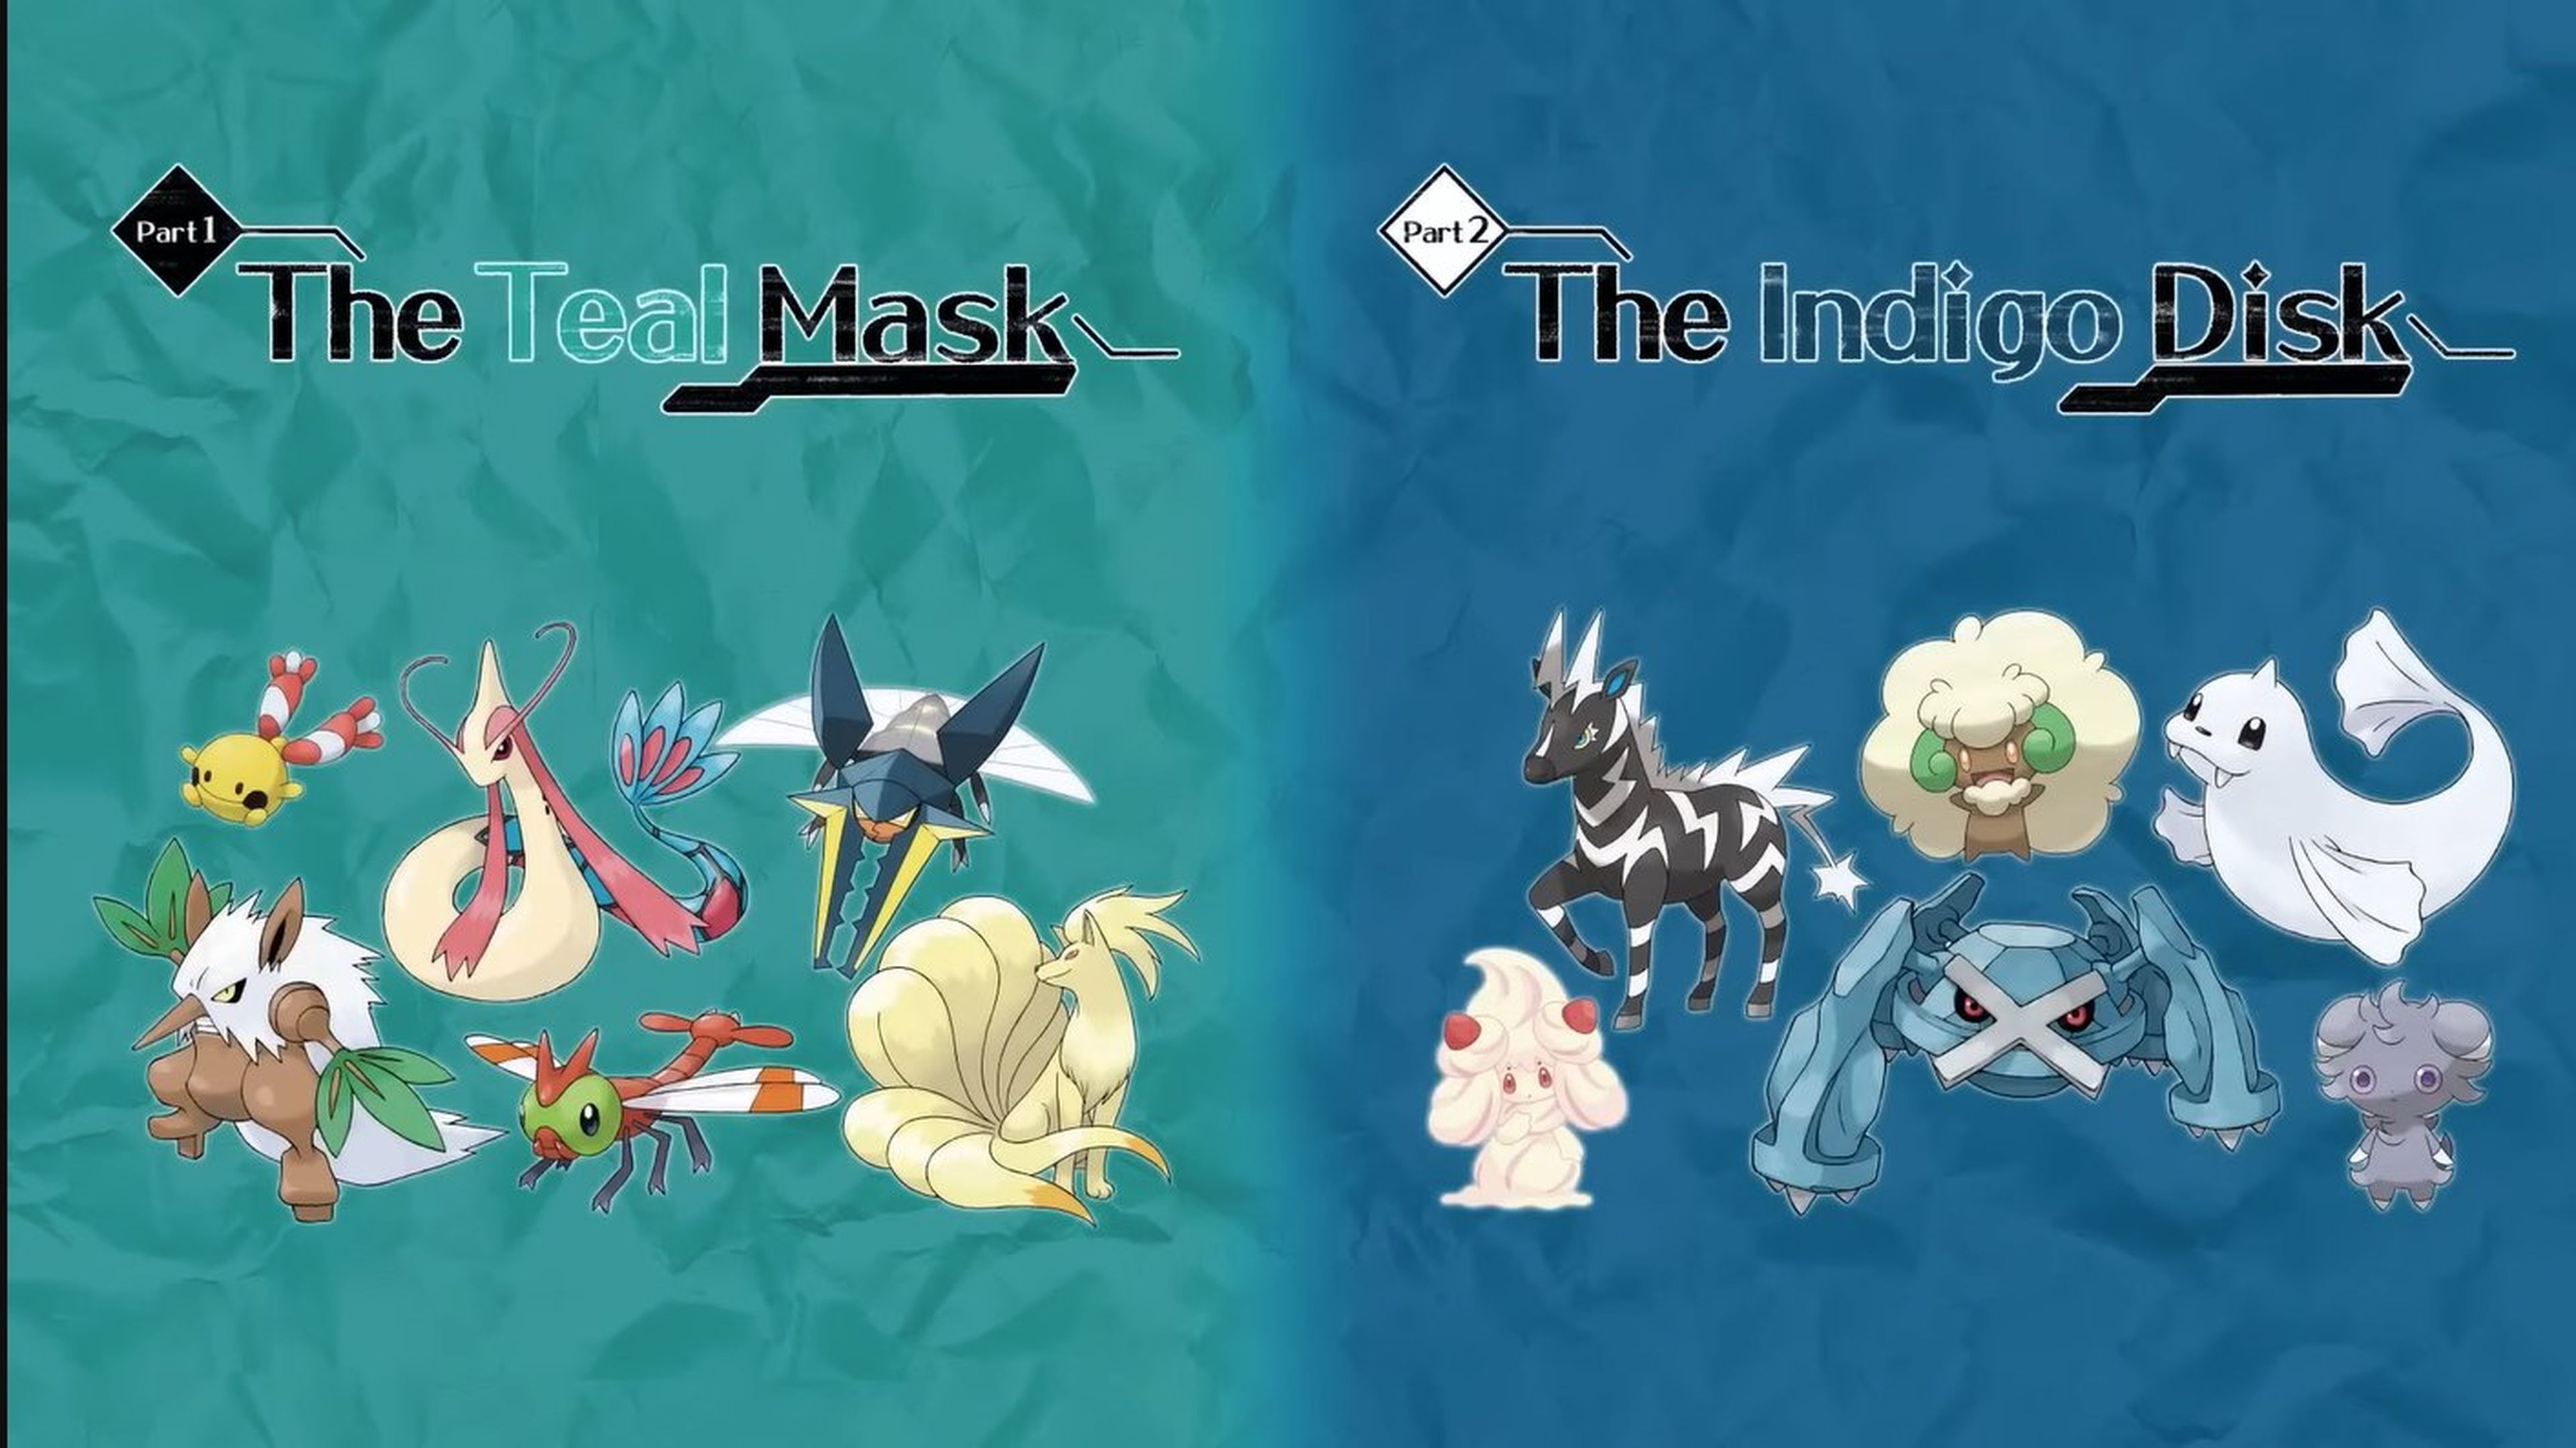 Pokémon Escarlata y Púrpura muestra a los dos nuevos legendarios de sus  próximas expansiones